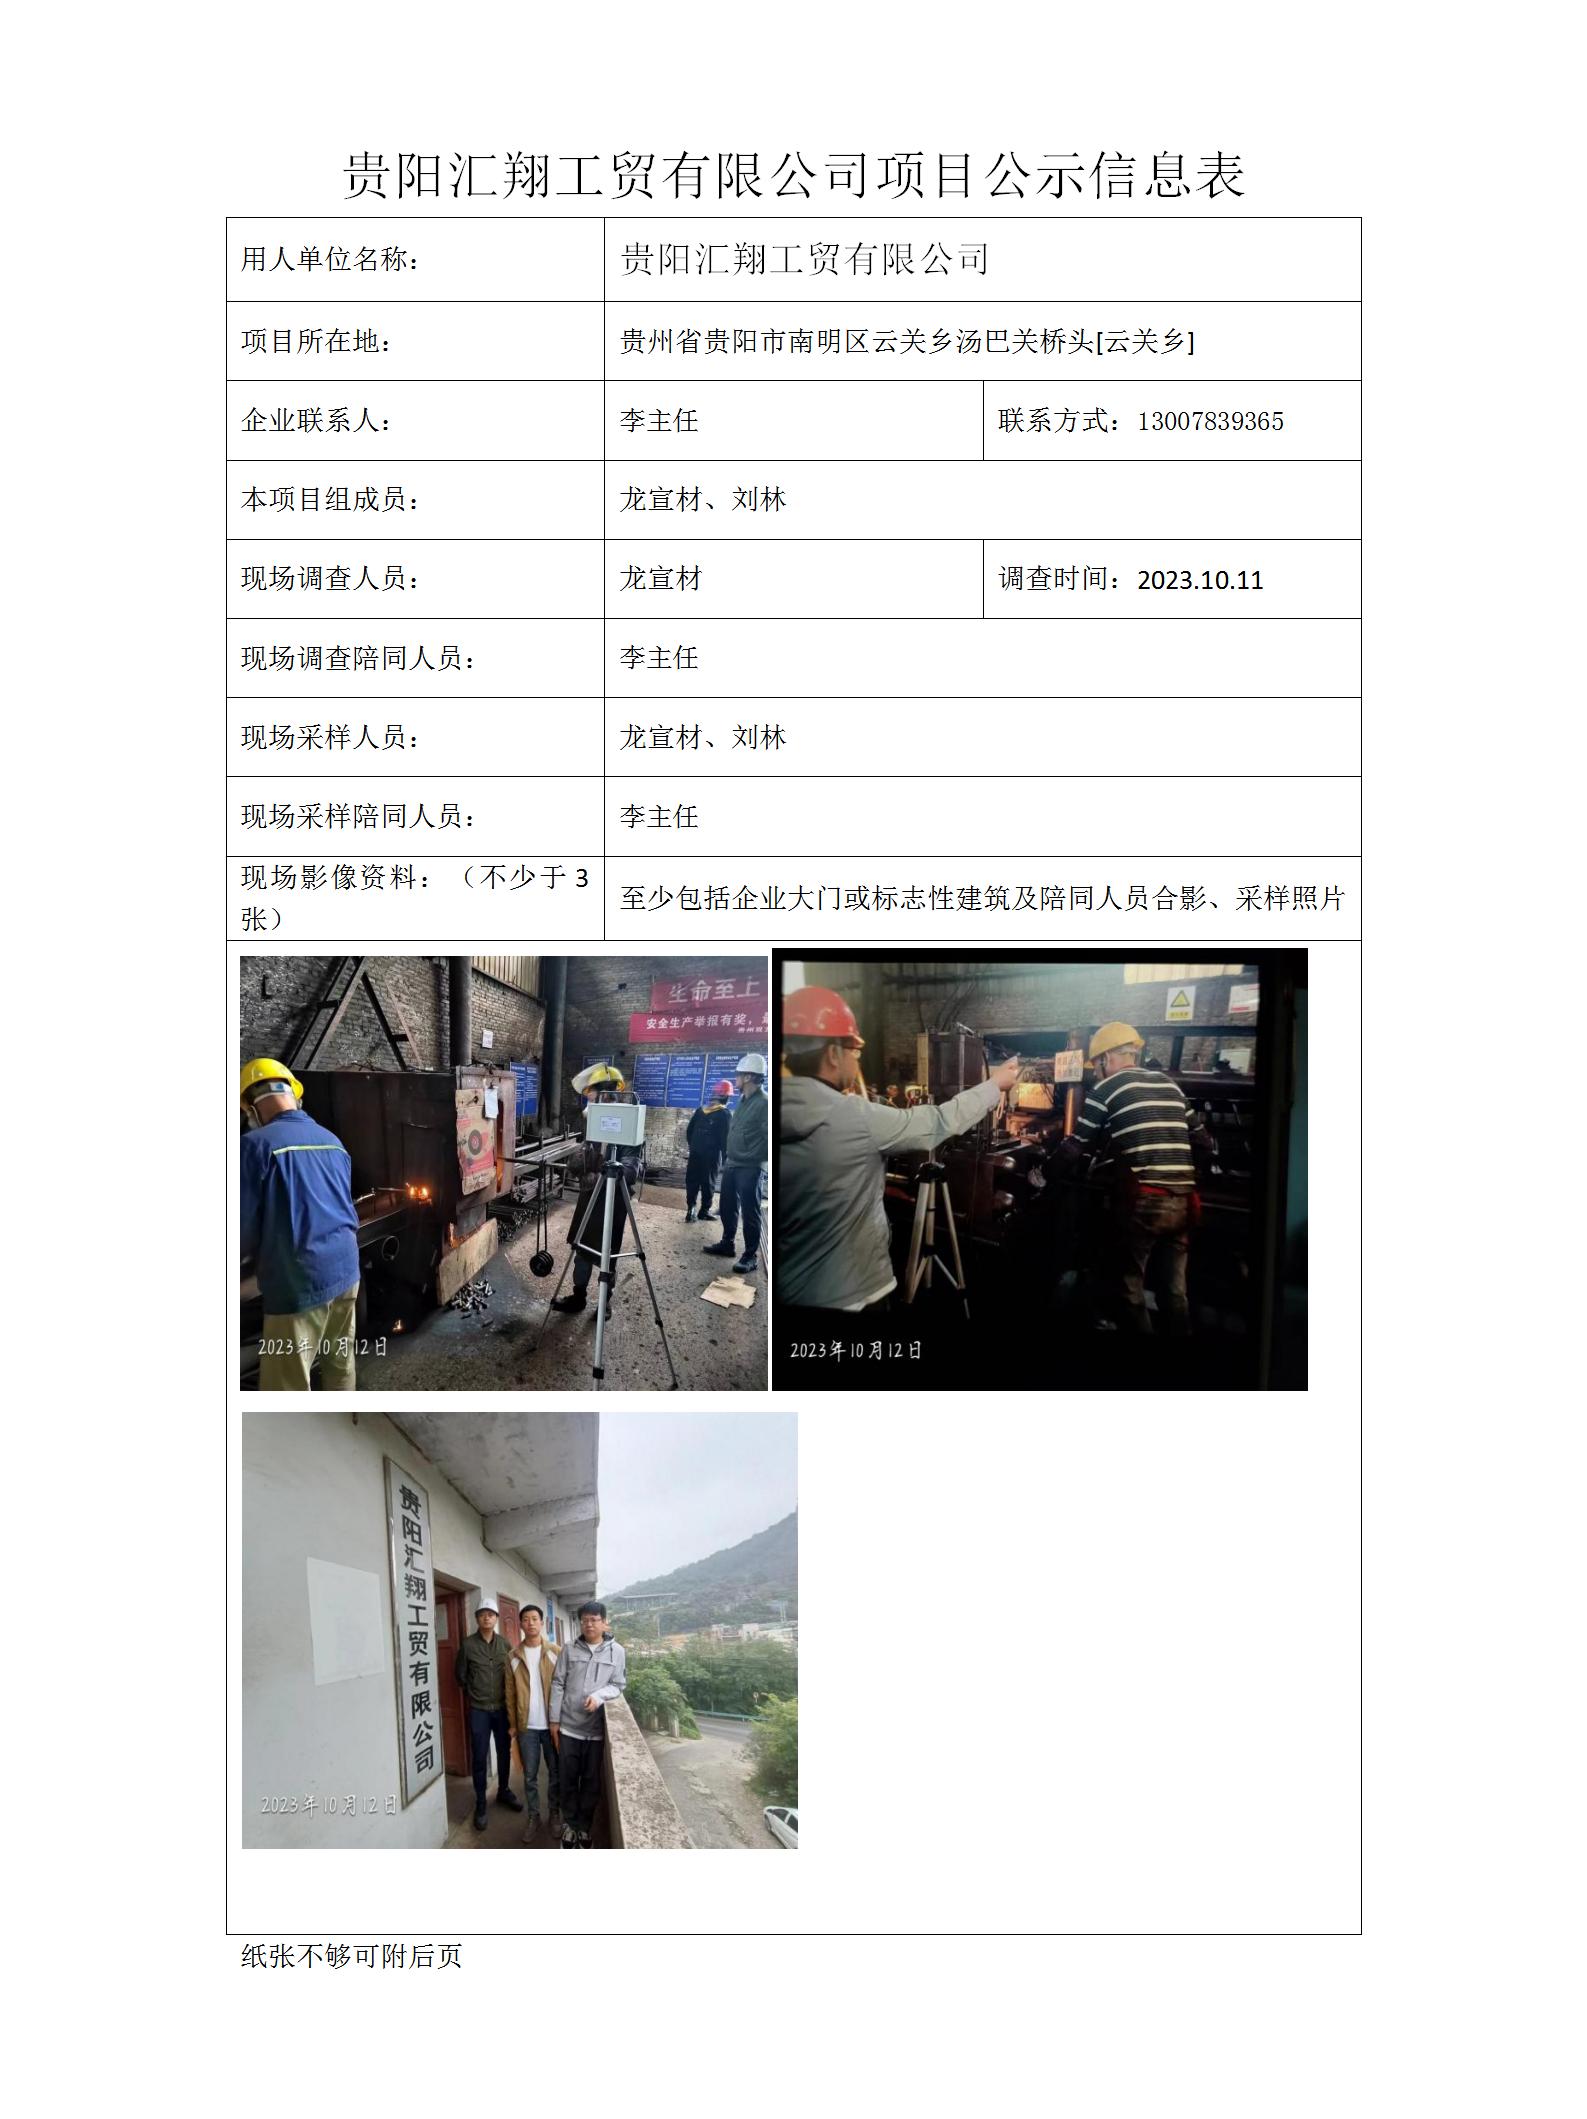 贵阳汇翔工贸有限公司项目公示信息表docx_01.jpg